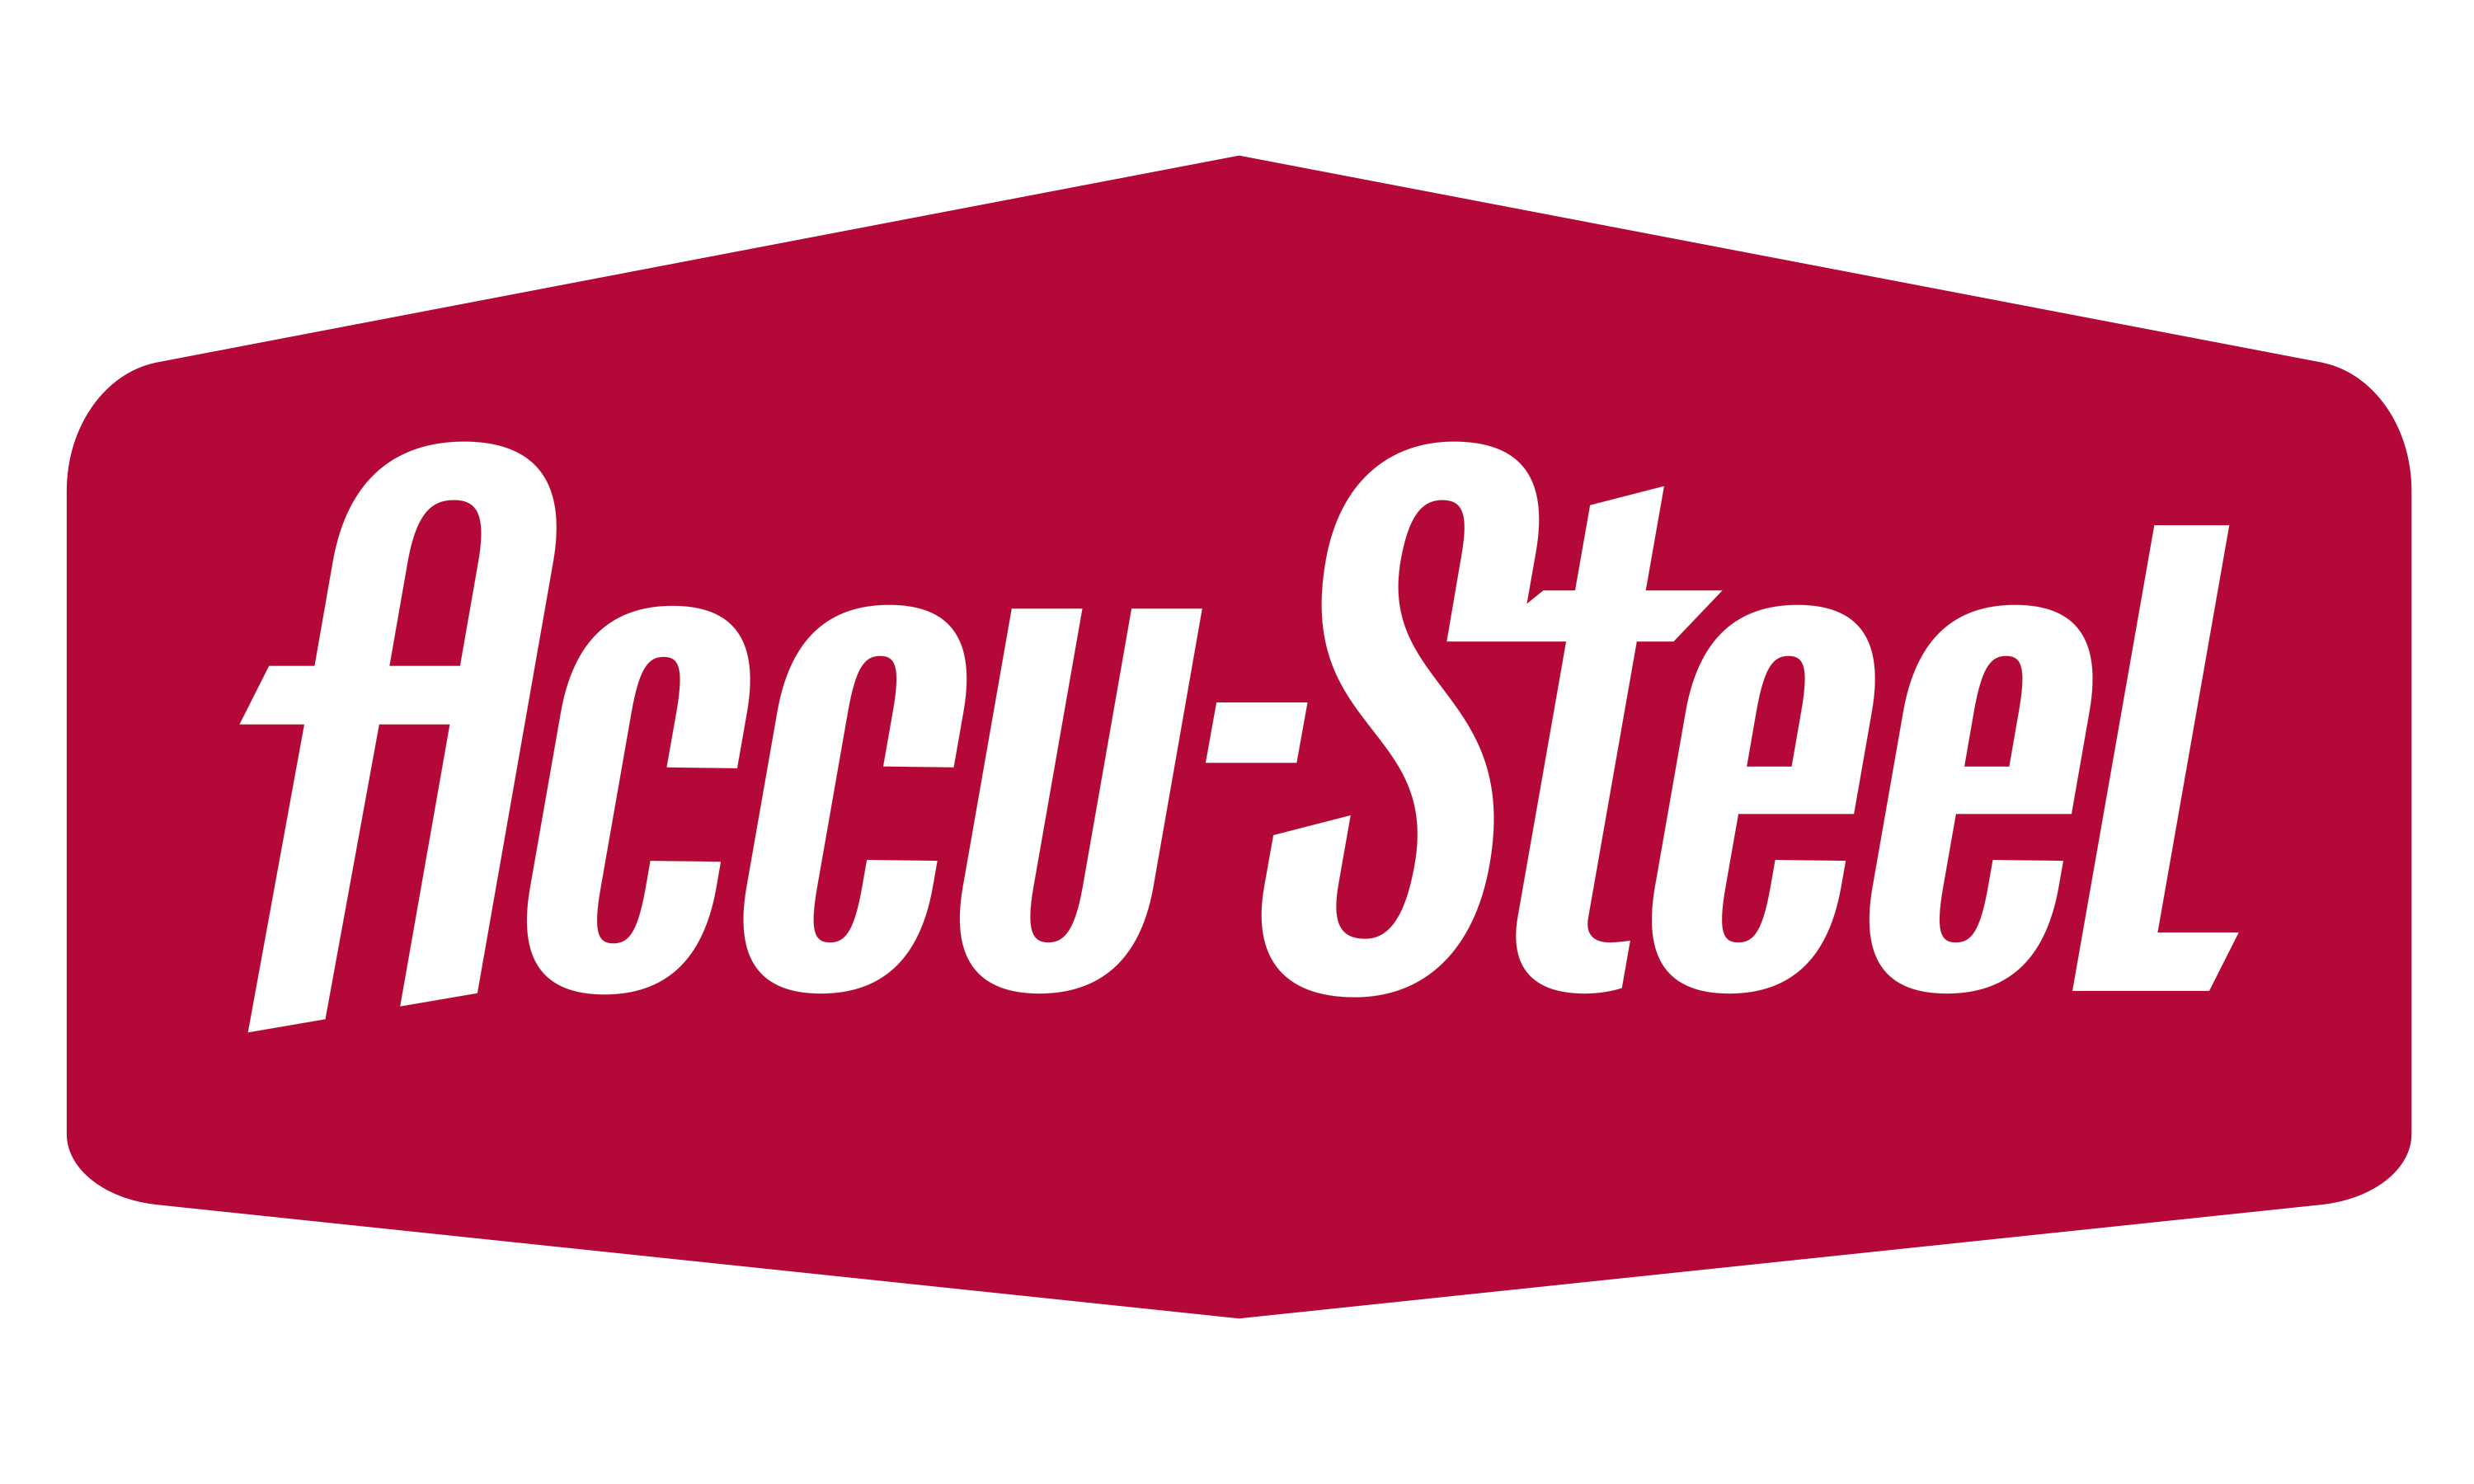 Accu-Steel